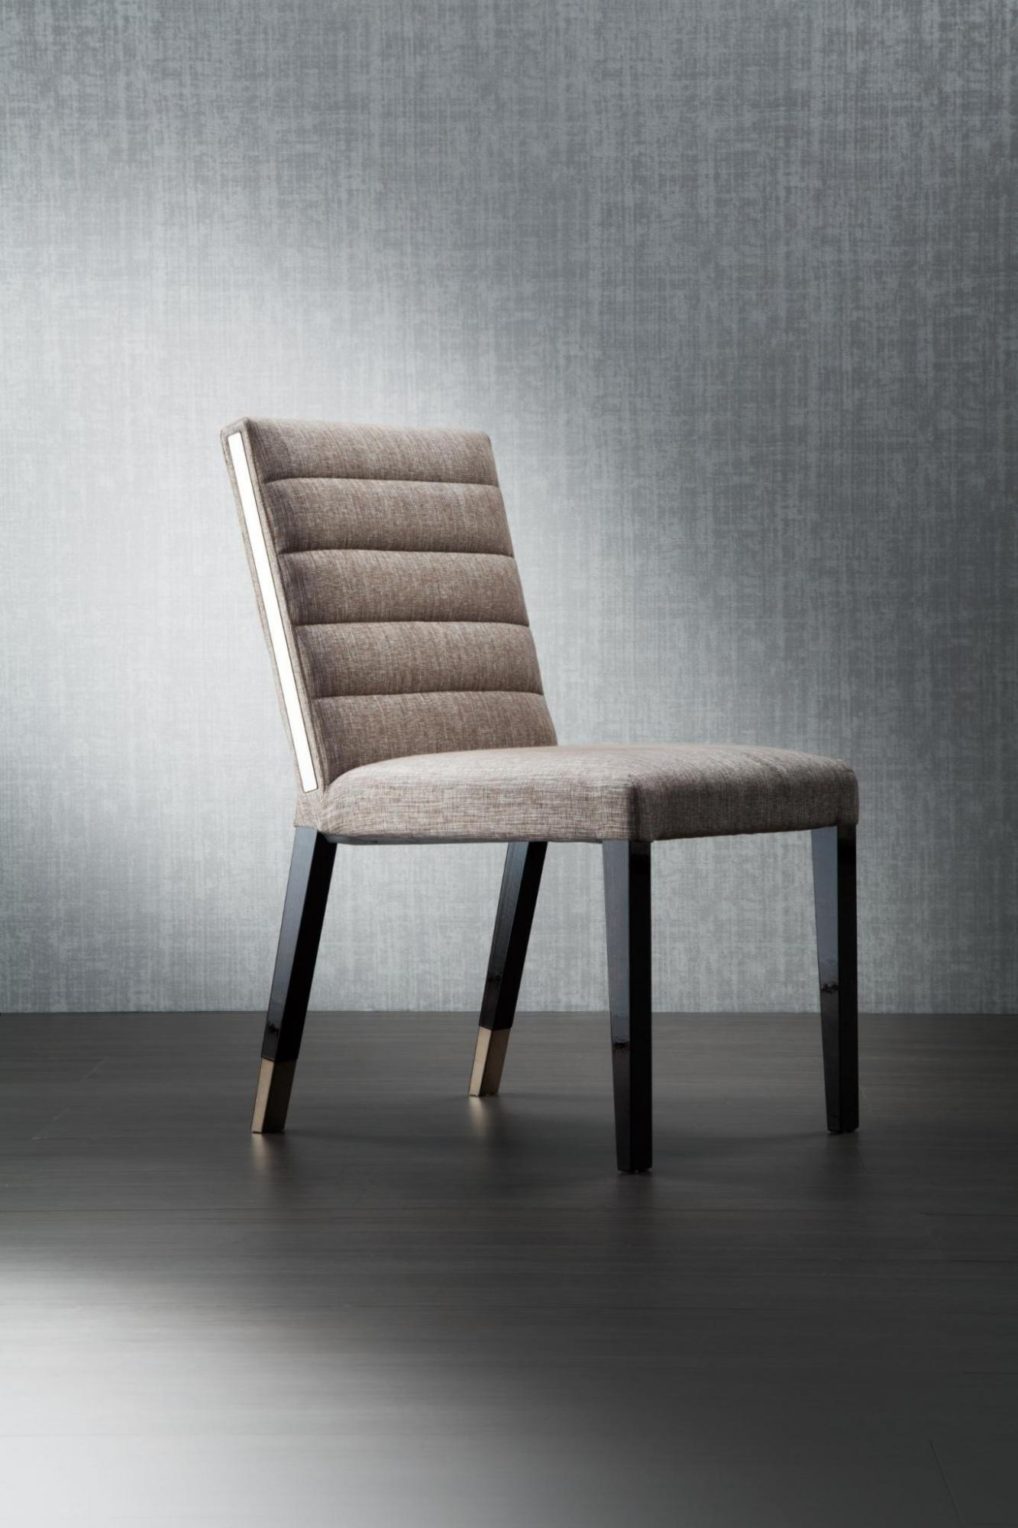 意大利家具costantinipietro的chairs-ASTON 餐椅 主图